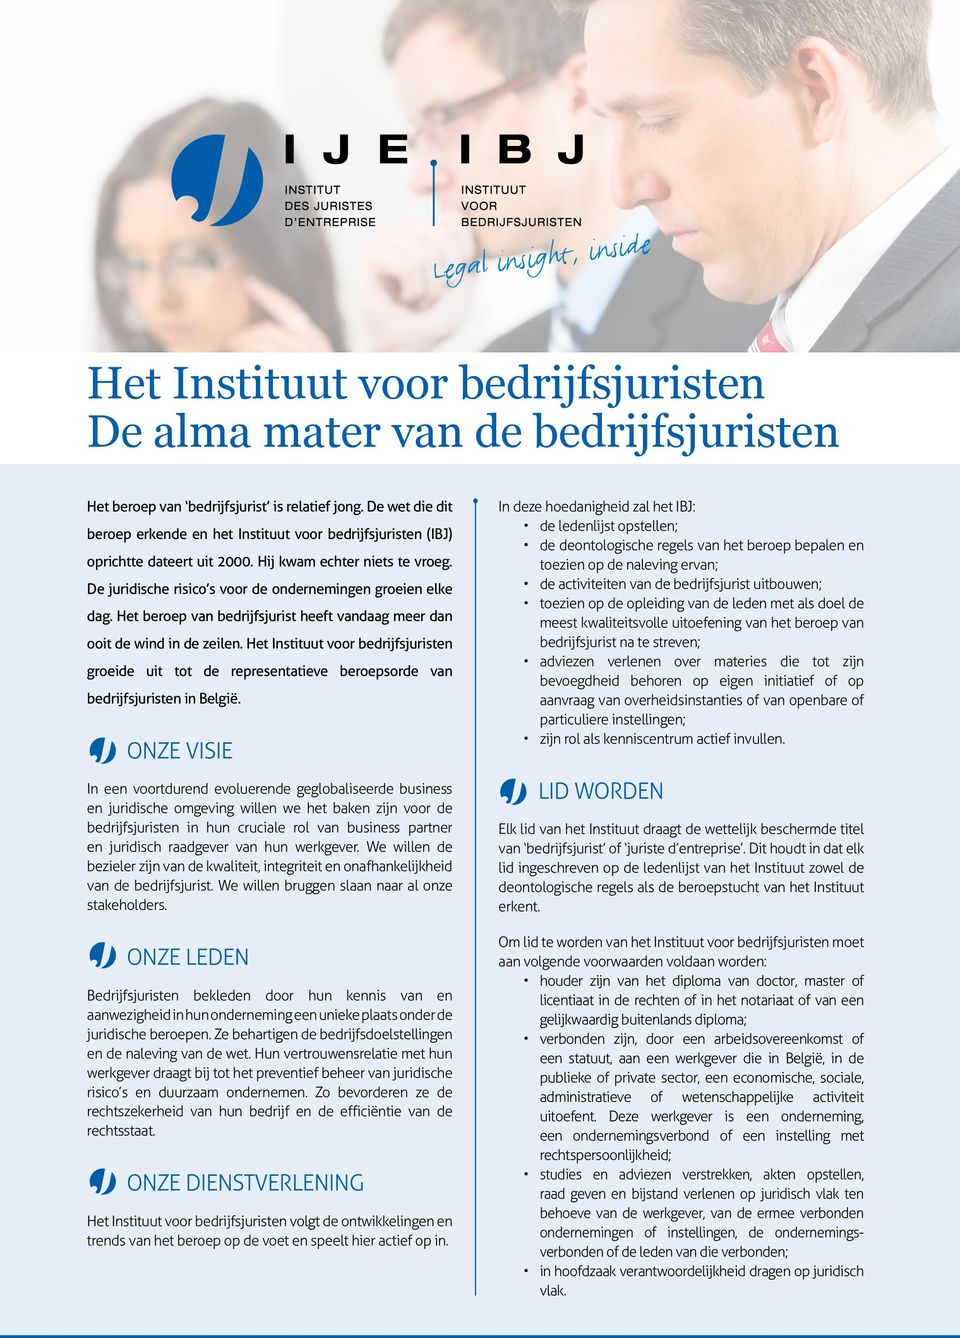 Het beroep van bedrijfsjurist heeft vandaag meer dan ooit de wind in de zeilen. Het Instituut voor bedrijfsjuristen groeide uit tot de representatieve beroepsorde van bedrijfsjuristen in België.